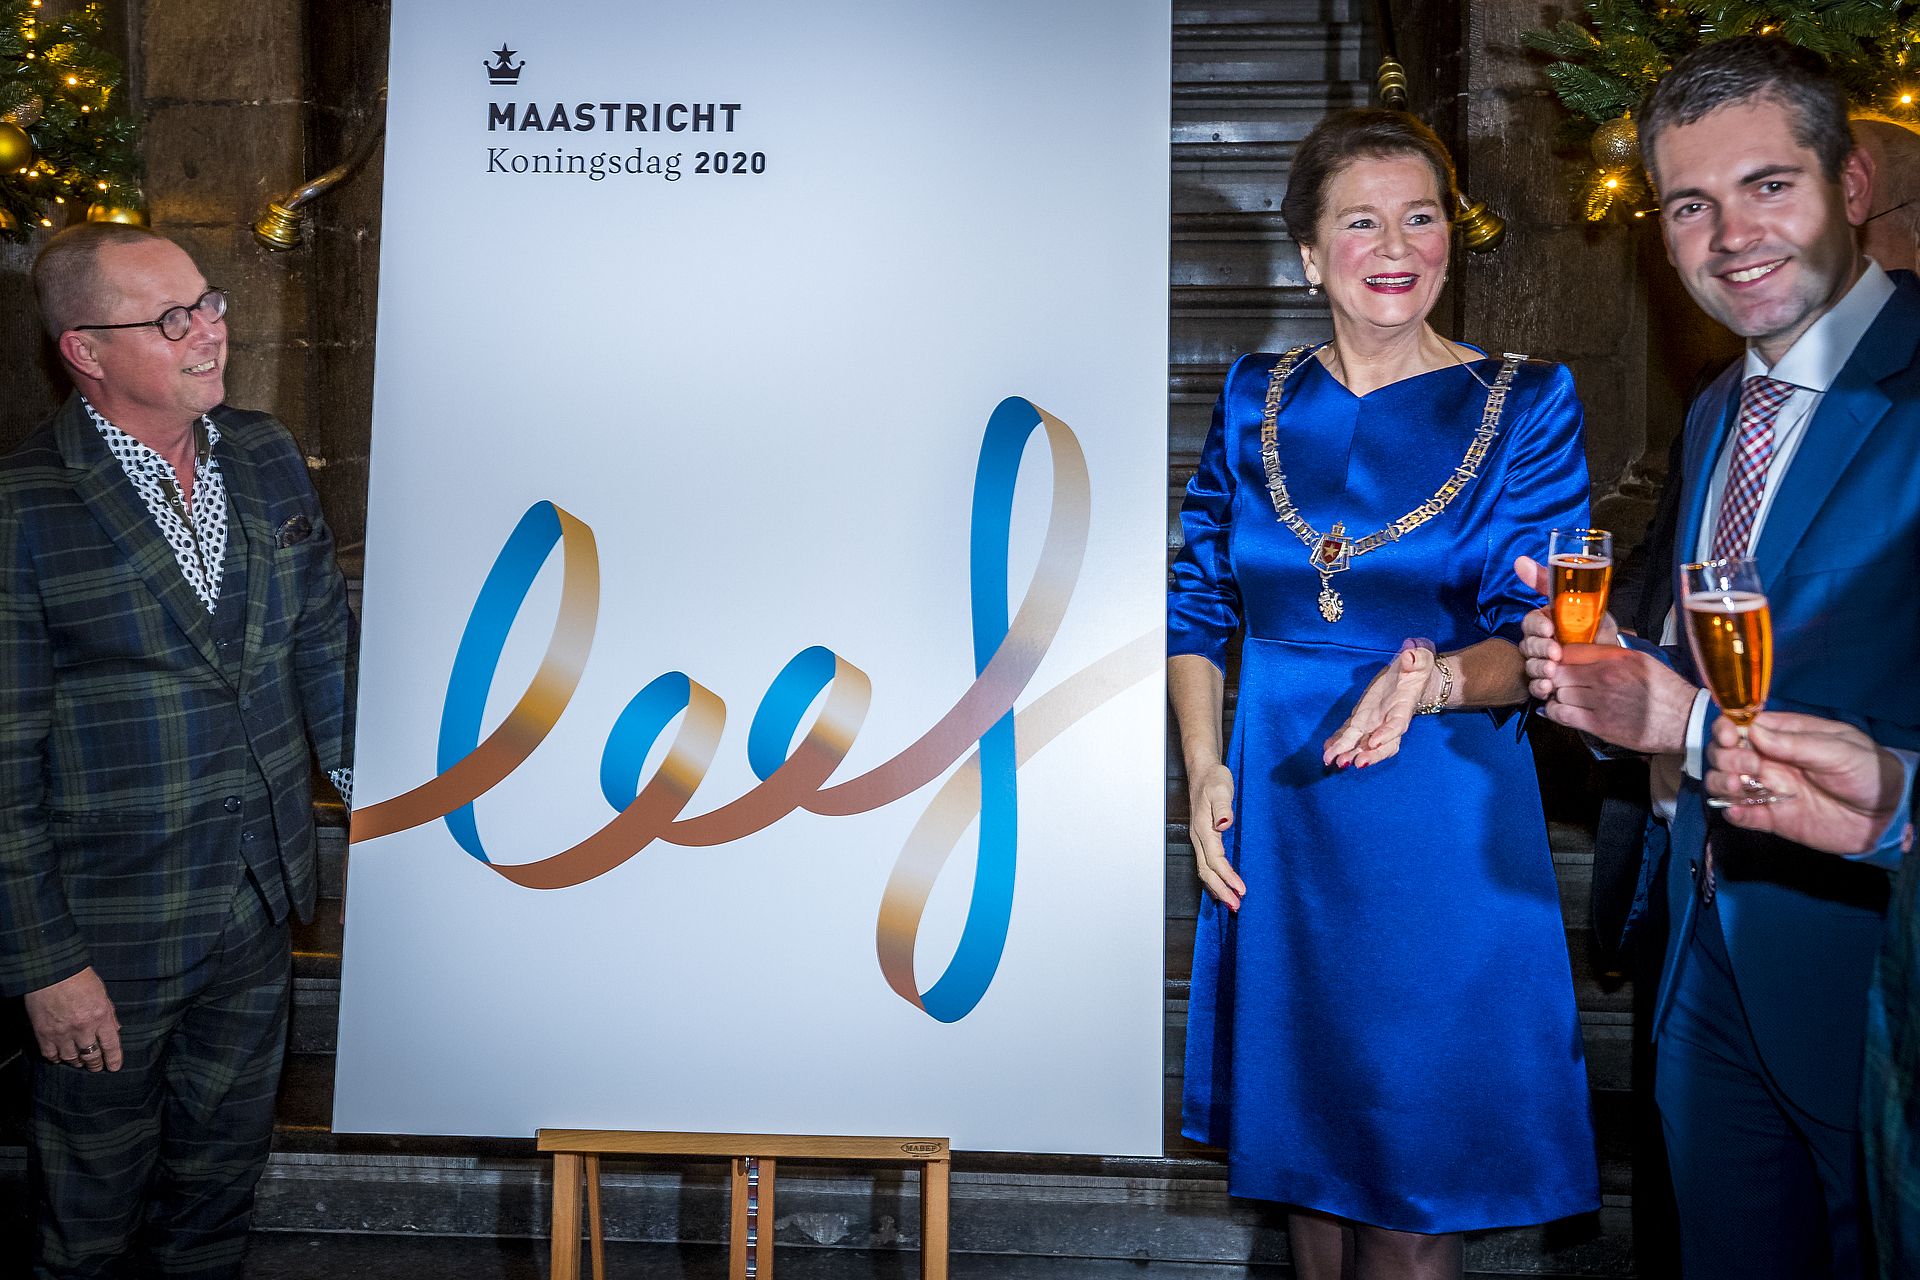 De burgemeester van Maastricht onthulde eerder dit jaar al het thema van Koningsdag 2020: Leef.